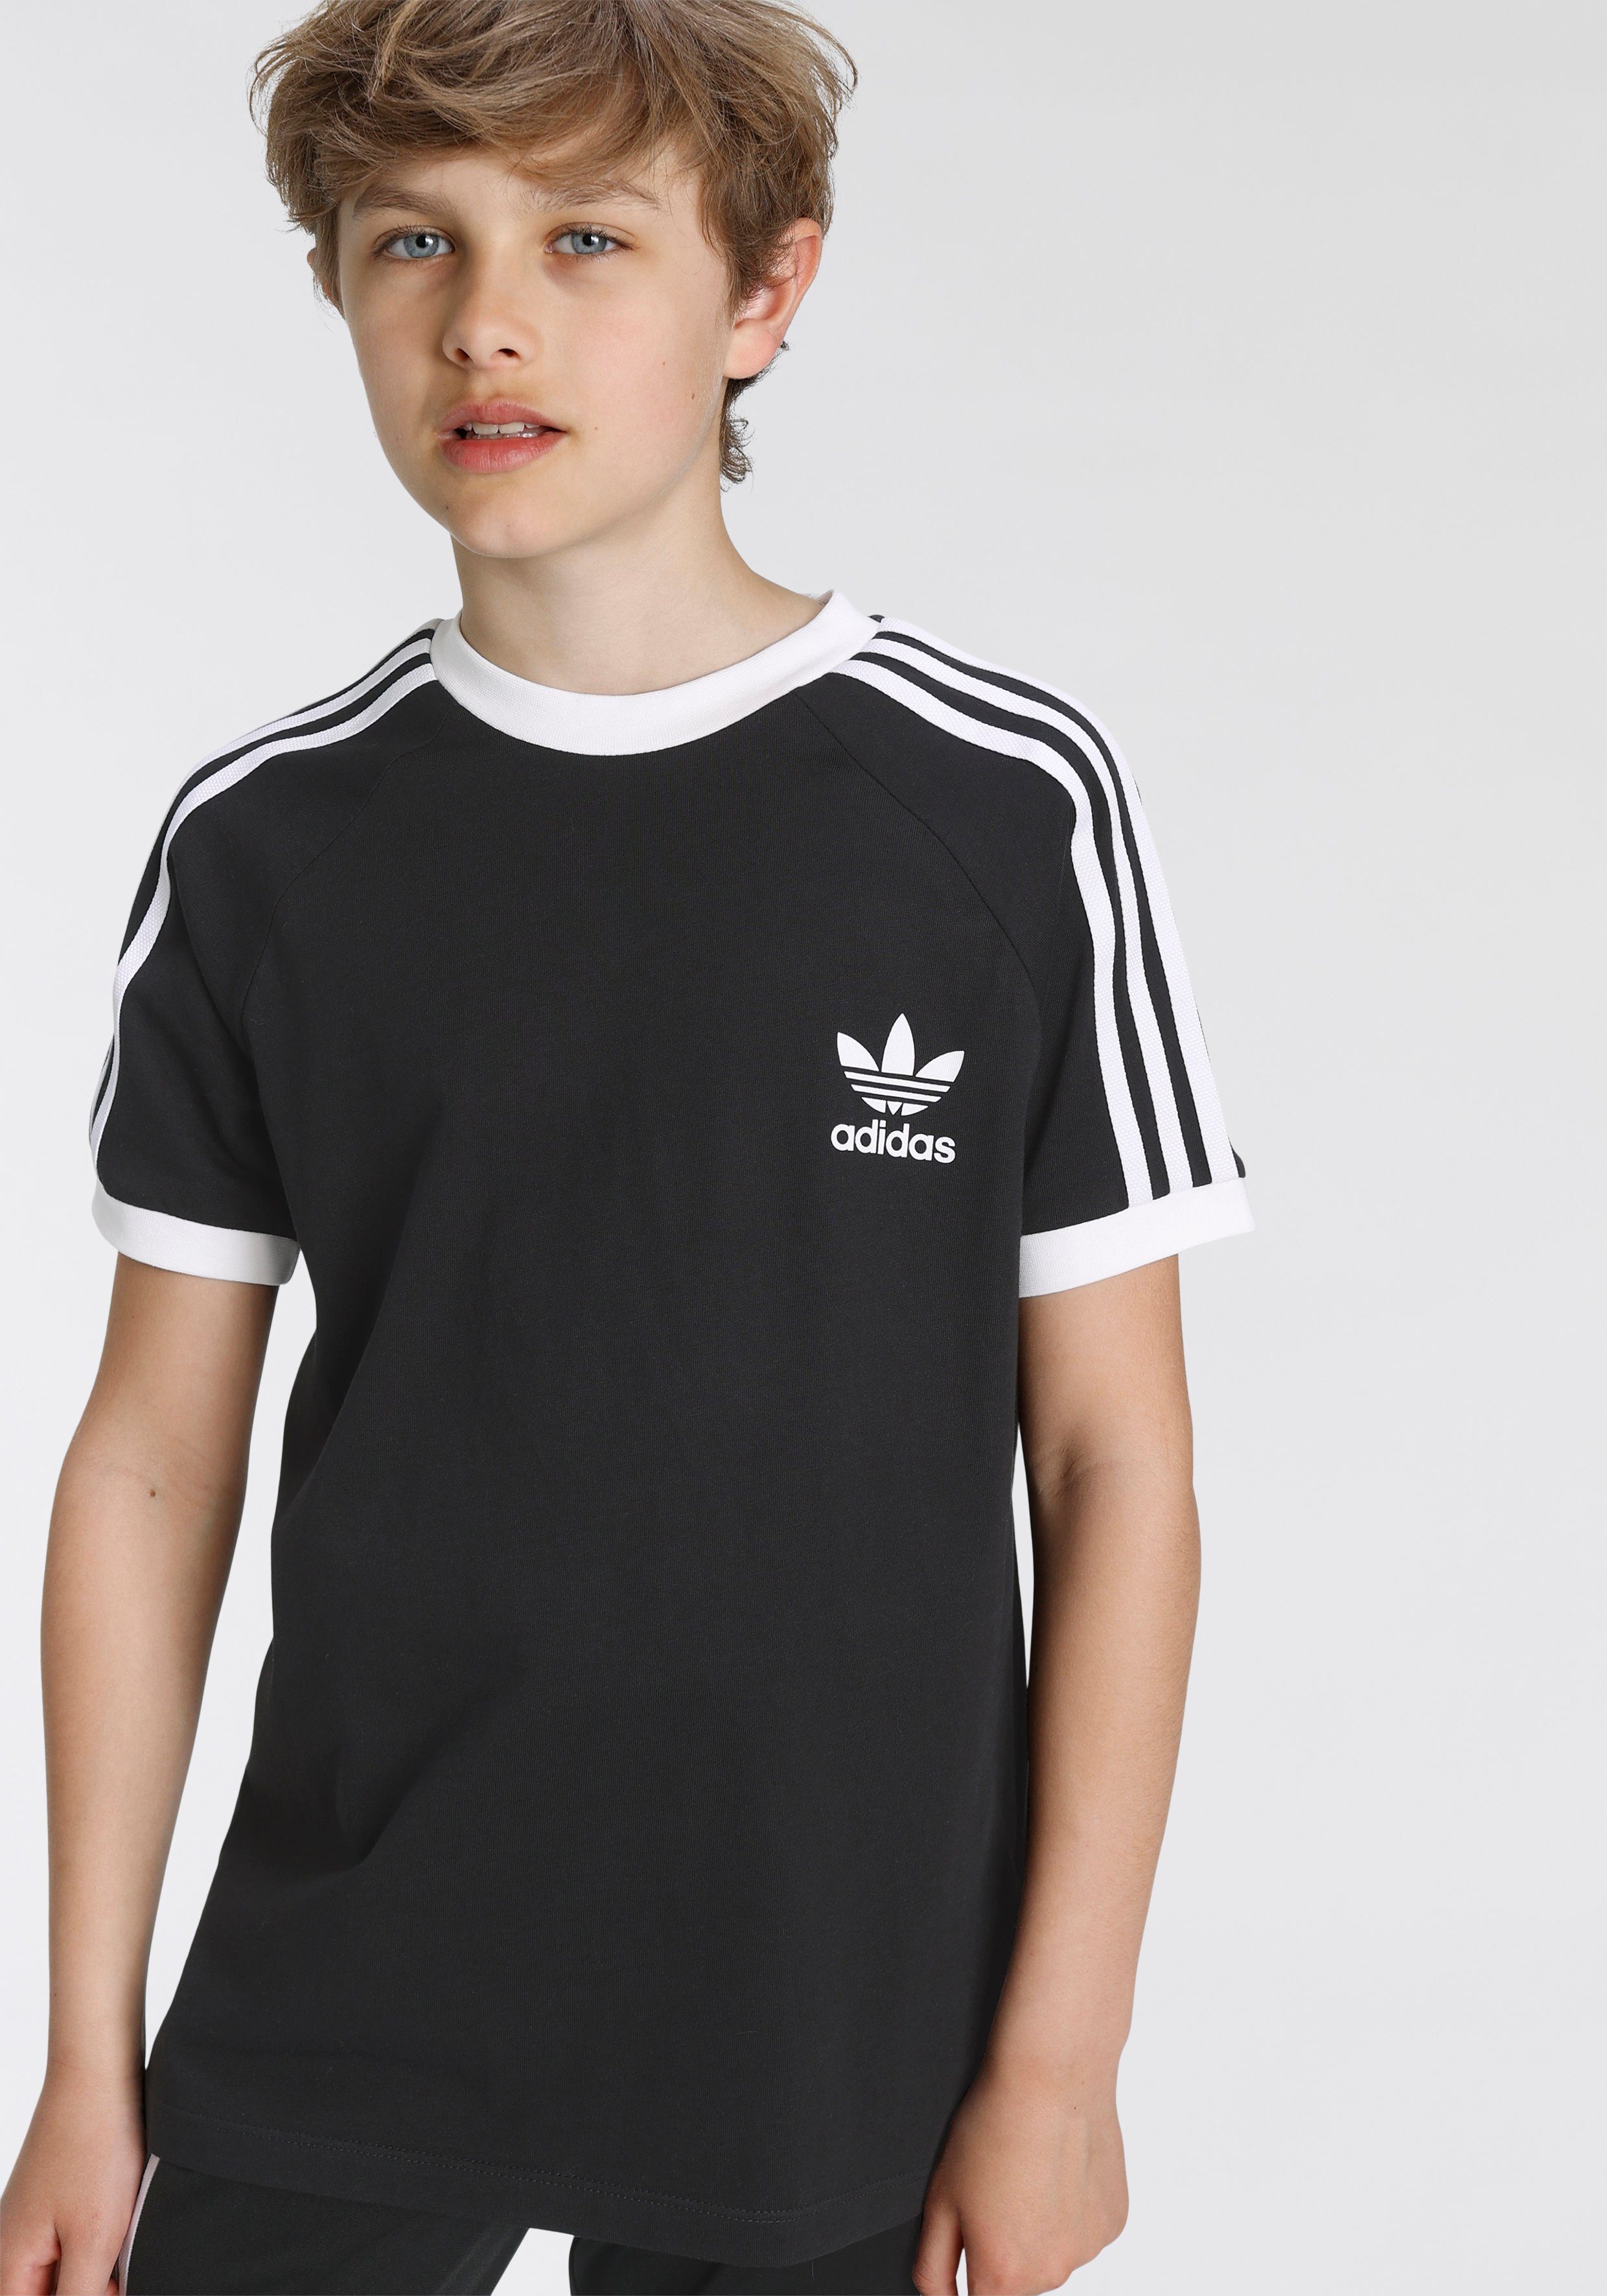 adidas Originals Jungen Shirts online kaufen | OTTO